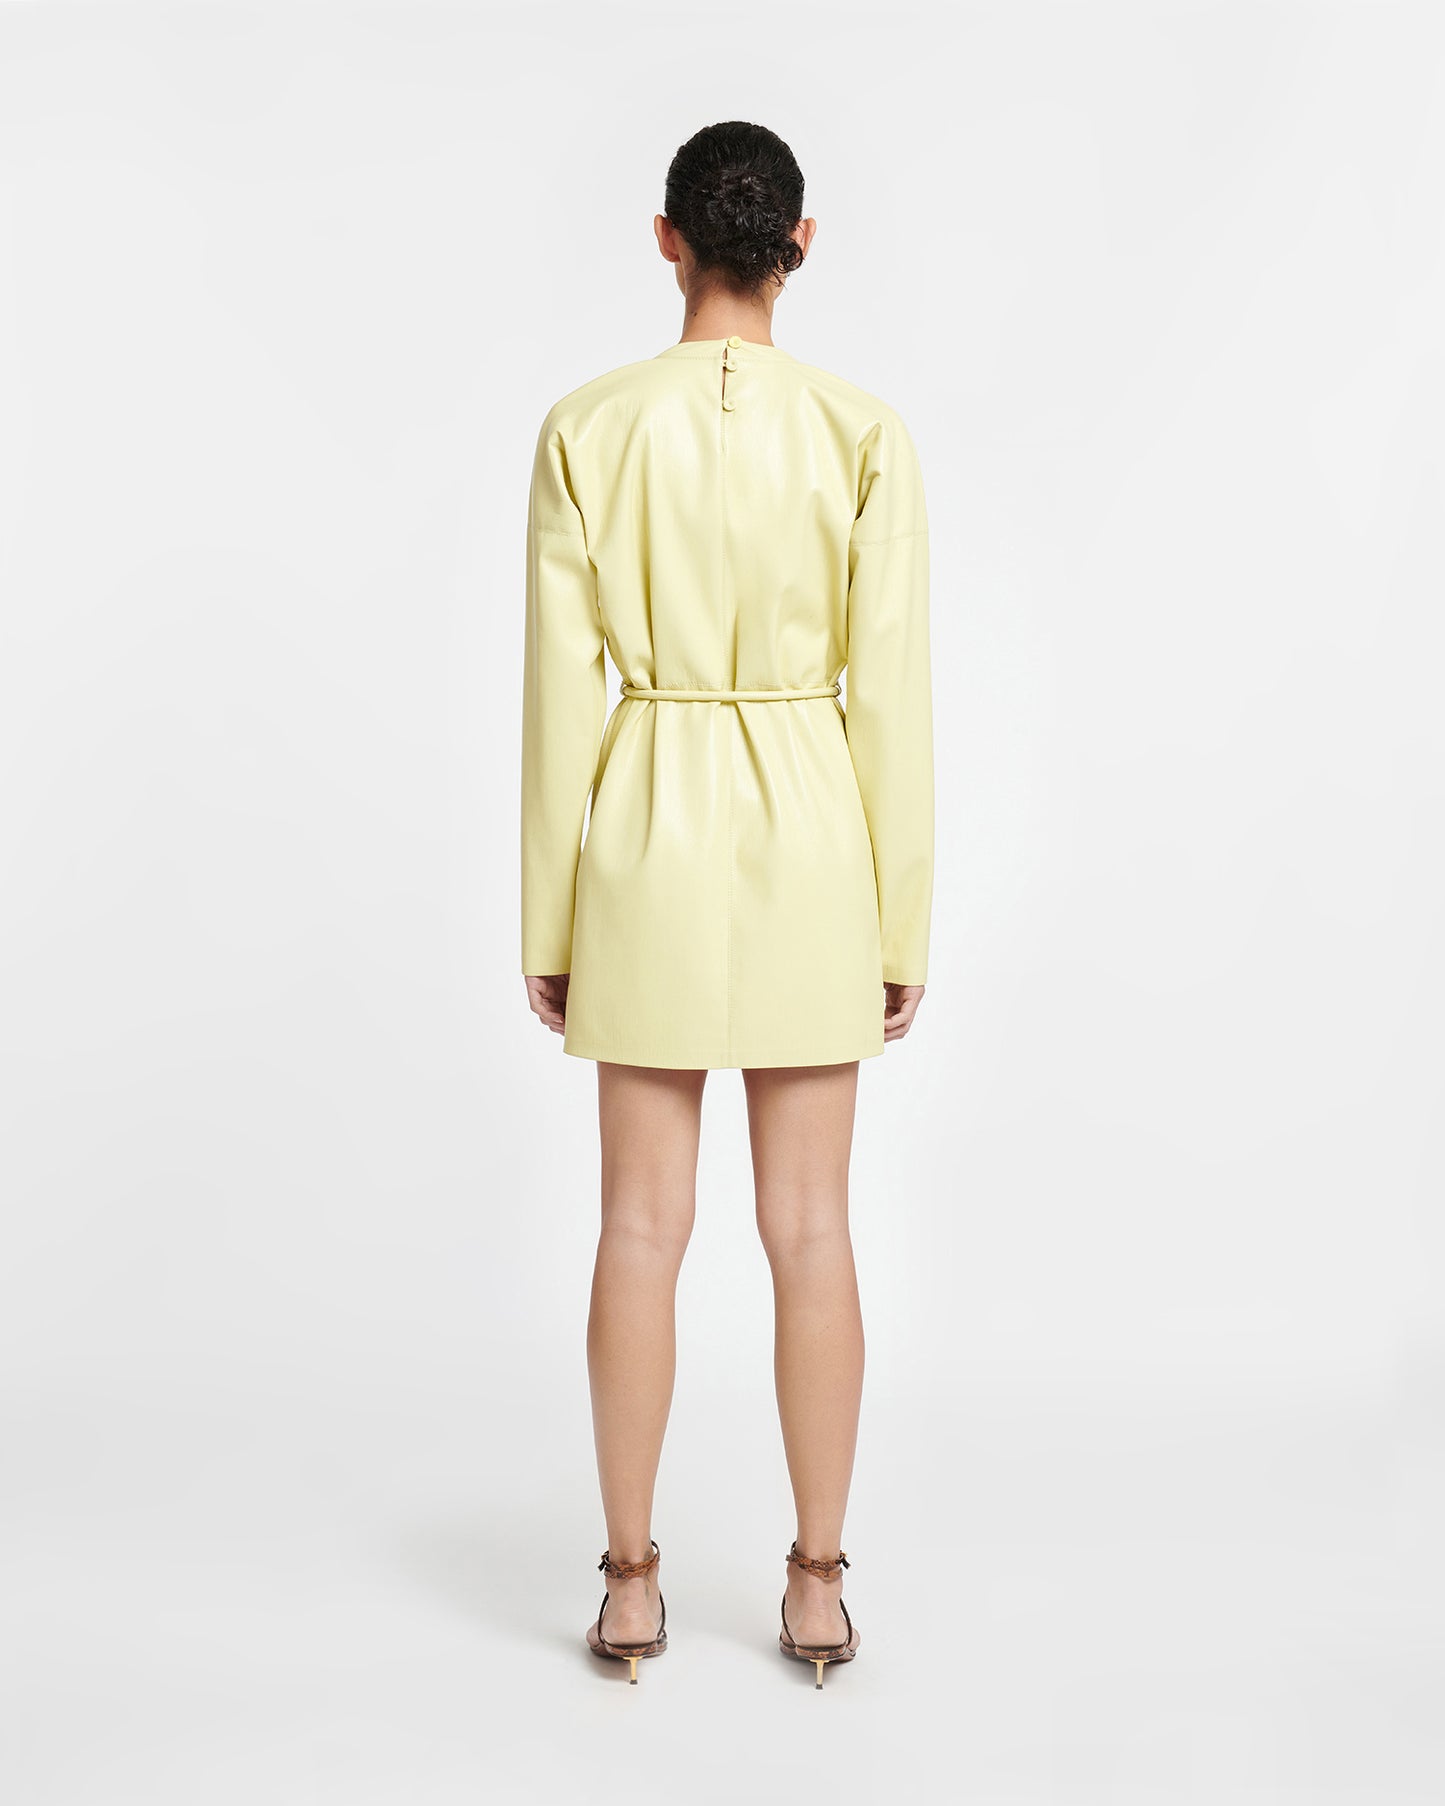 Vanessa - Okobor™ Alt-Leather Mini Dress - Lemongrass